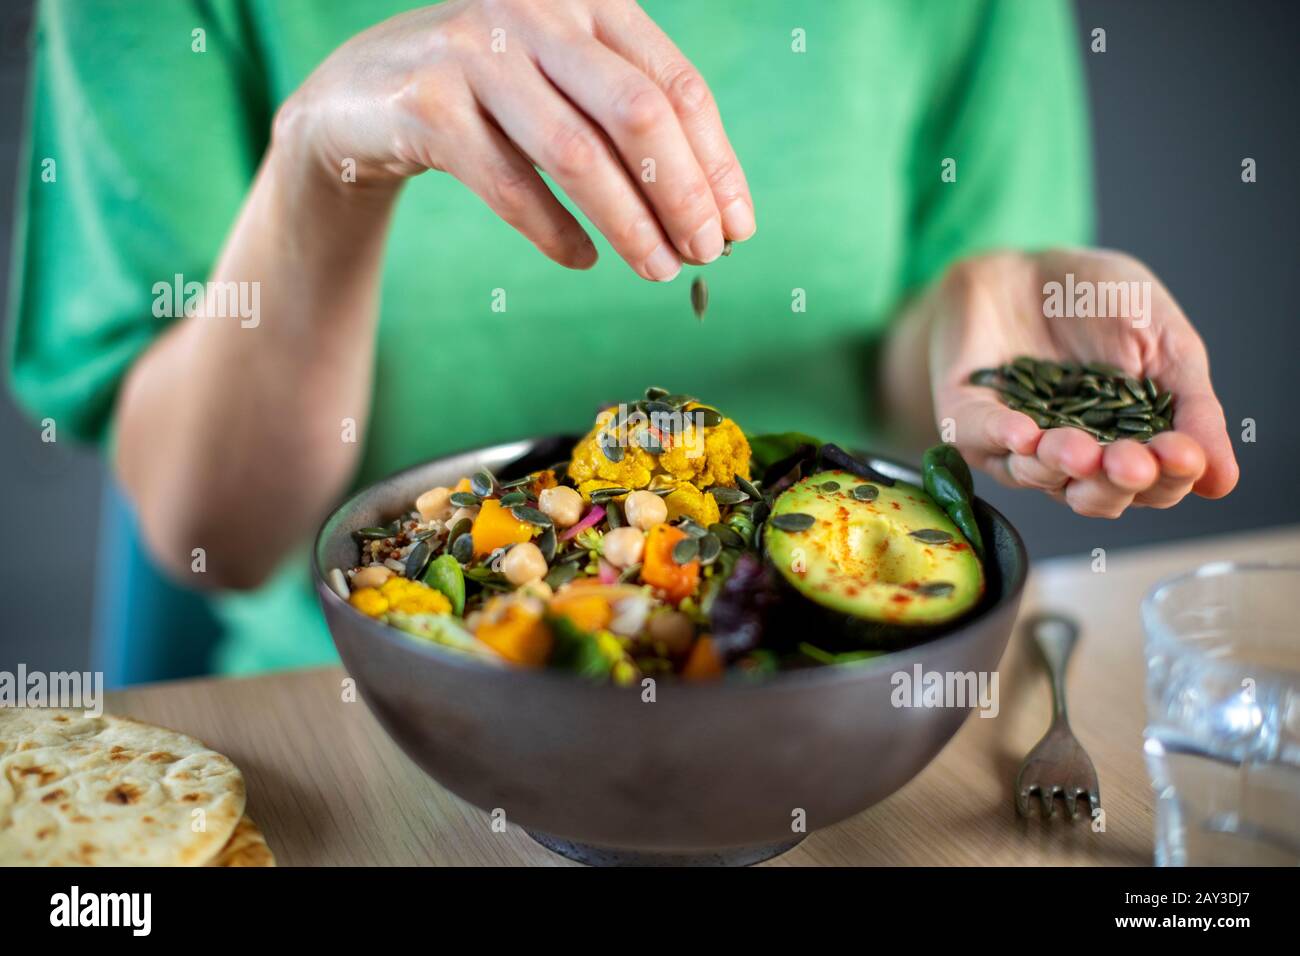 Close Up Of Woman Aggiungere Semi Di Zucca Al Pasto Sano Vegan In Bowl Foto Stock